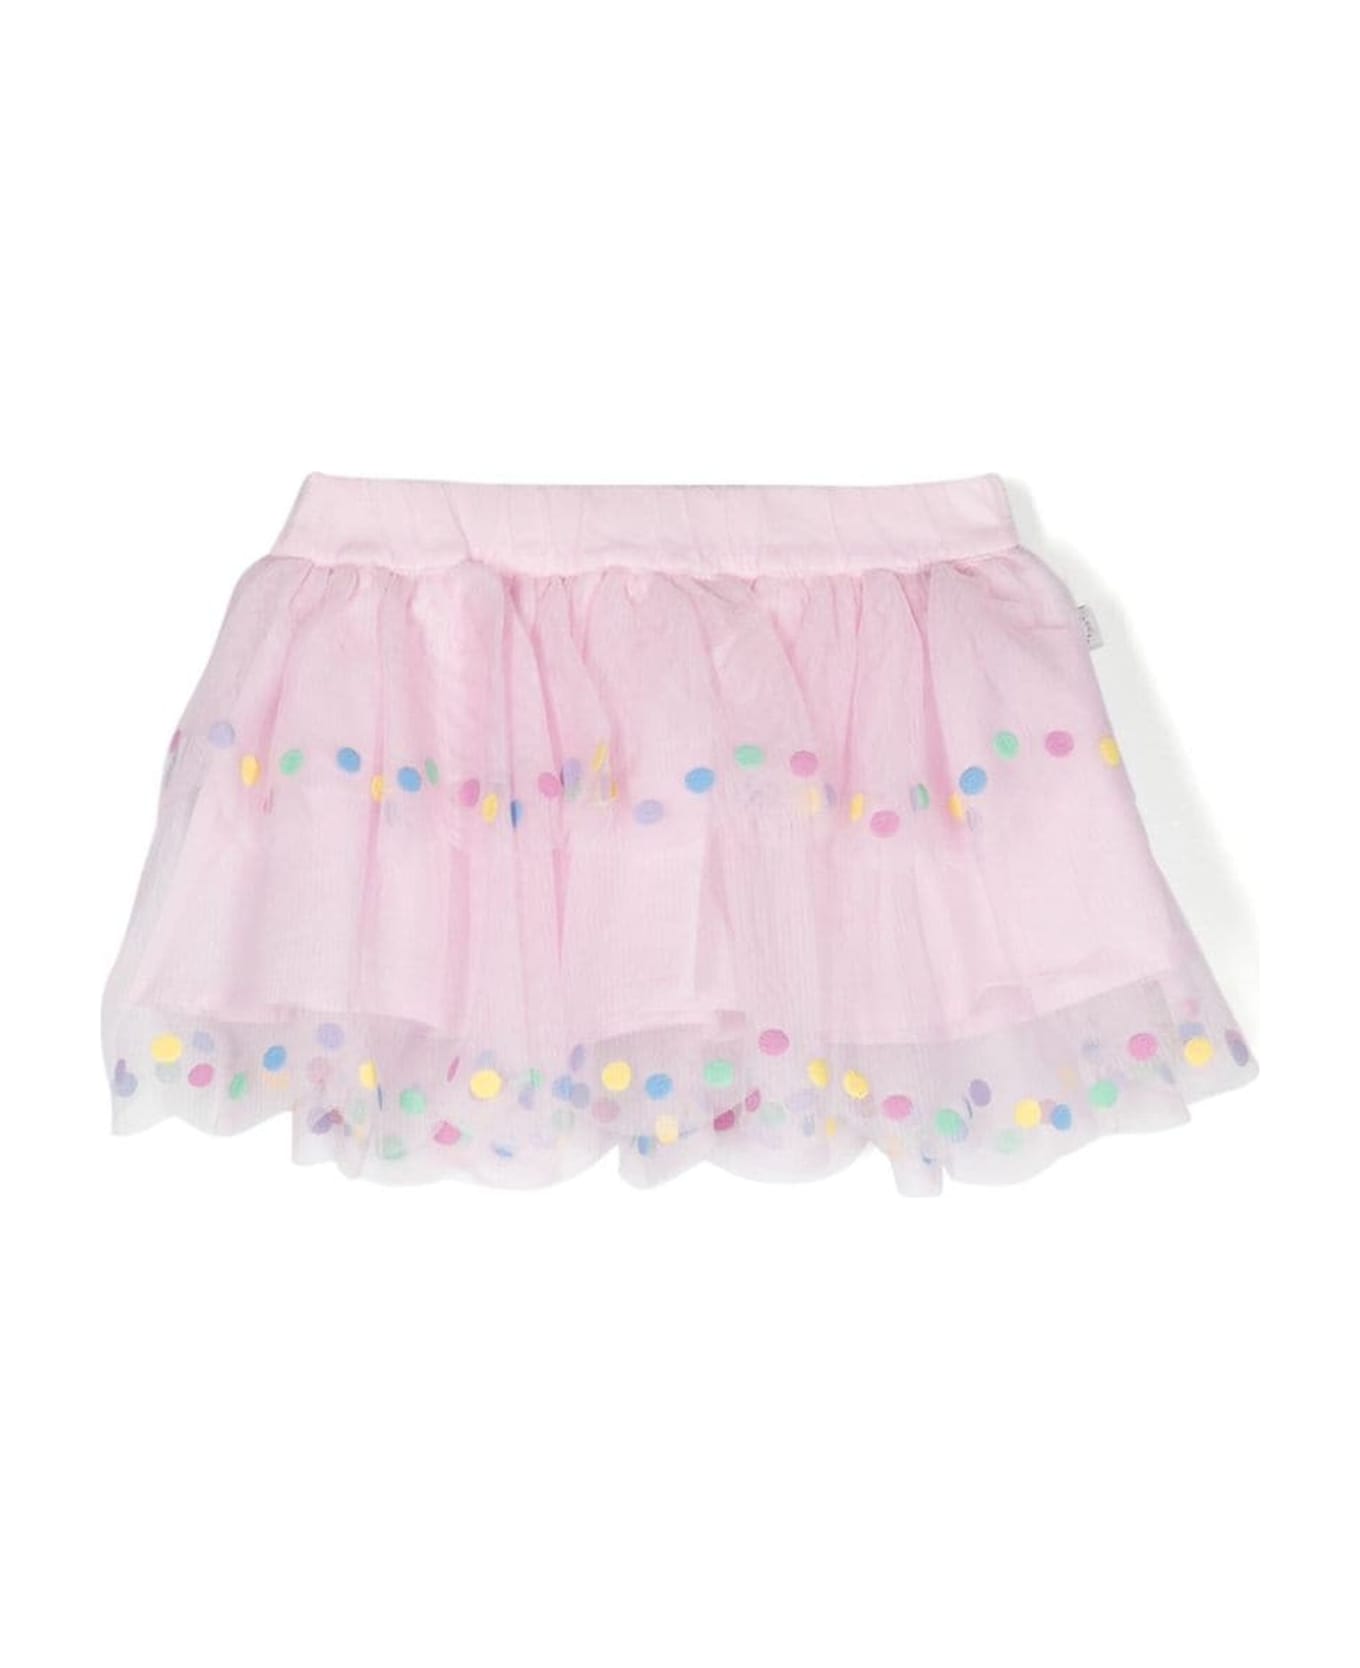 Stella McCartney Kids Skirts Pink - Pink ボトムス